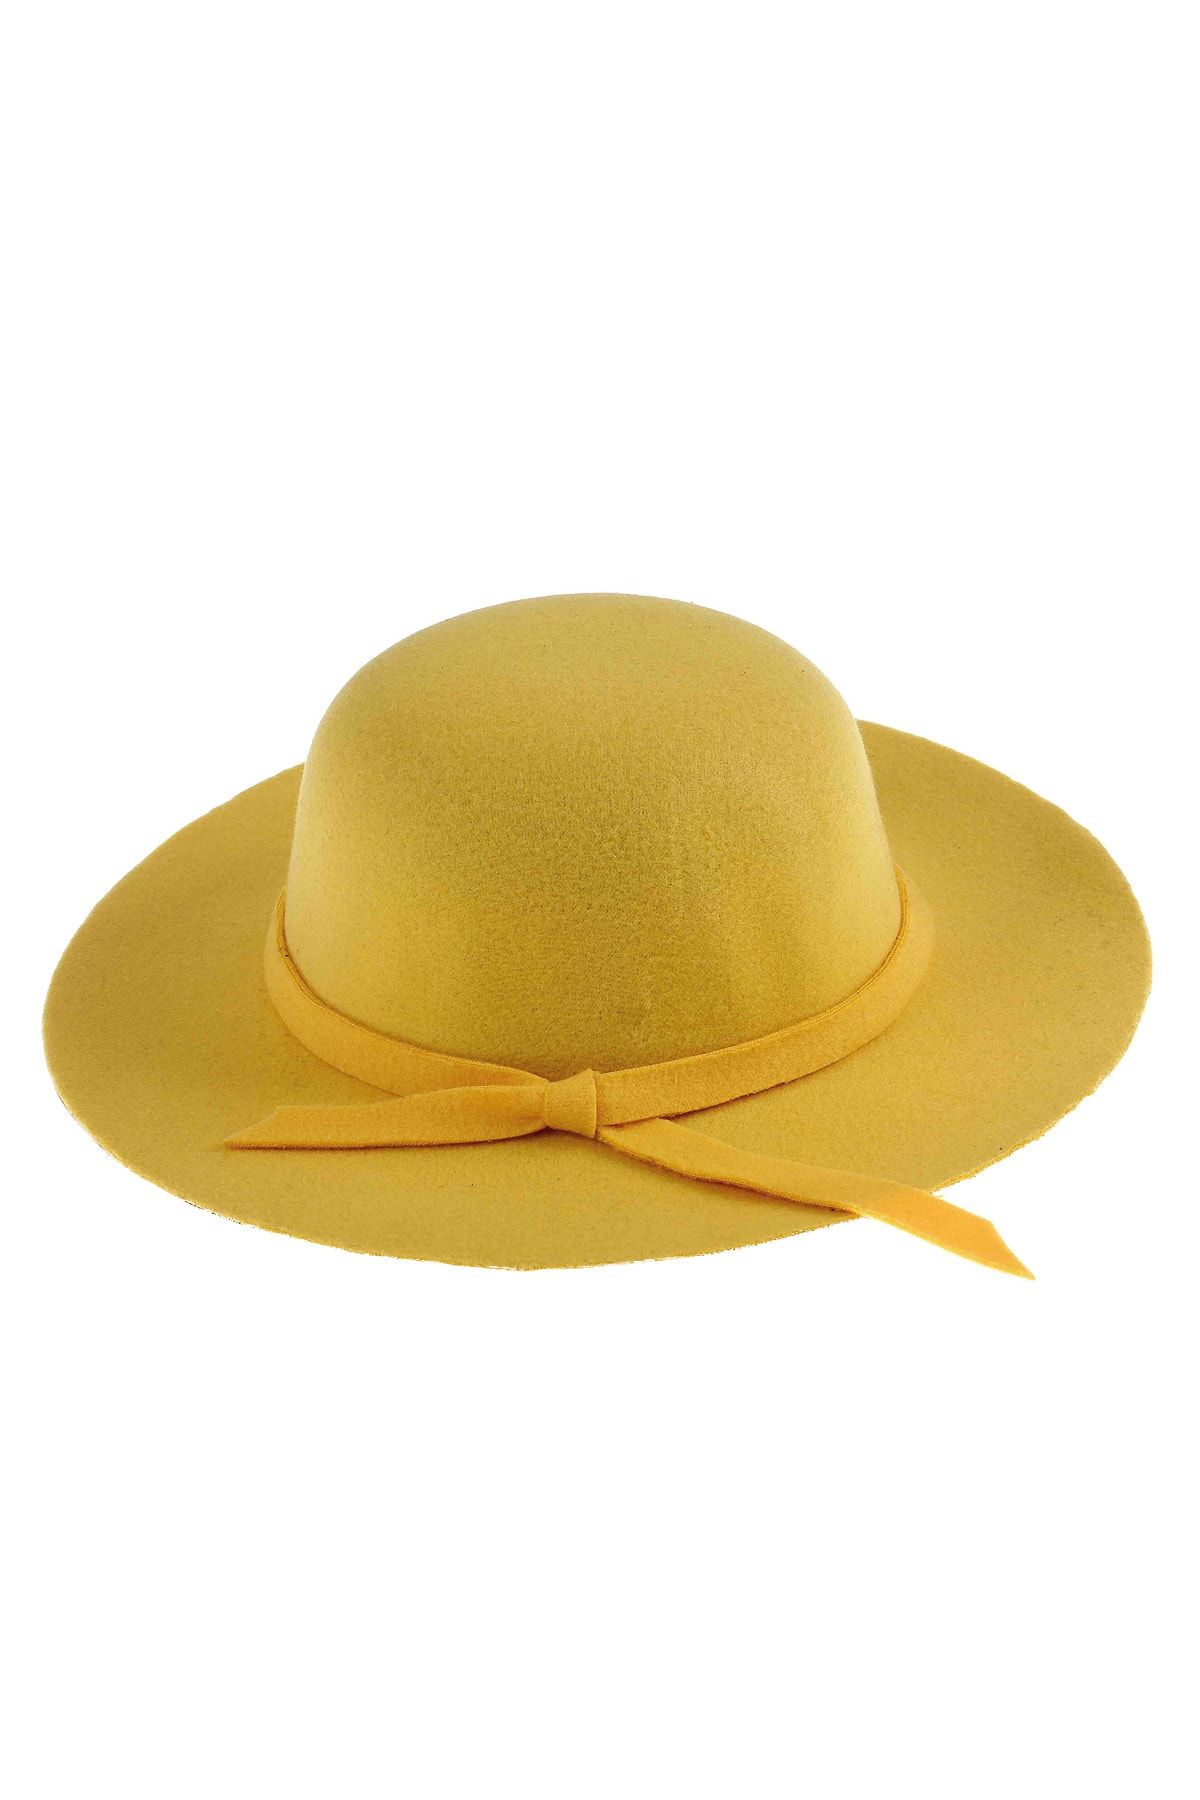 Bay Şapkacı Kız Çocuk Geniş Kenarlı Kaşe Şapka 7168 Sarı